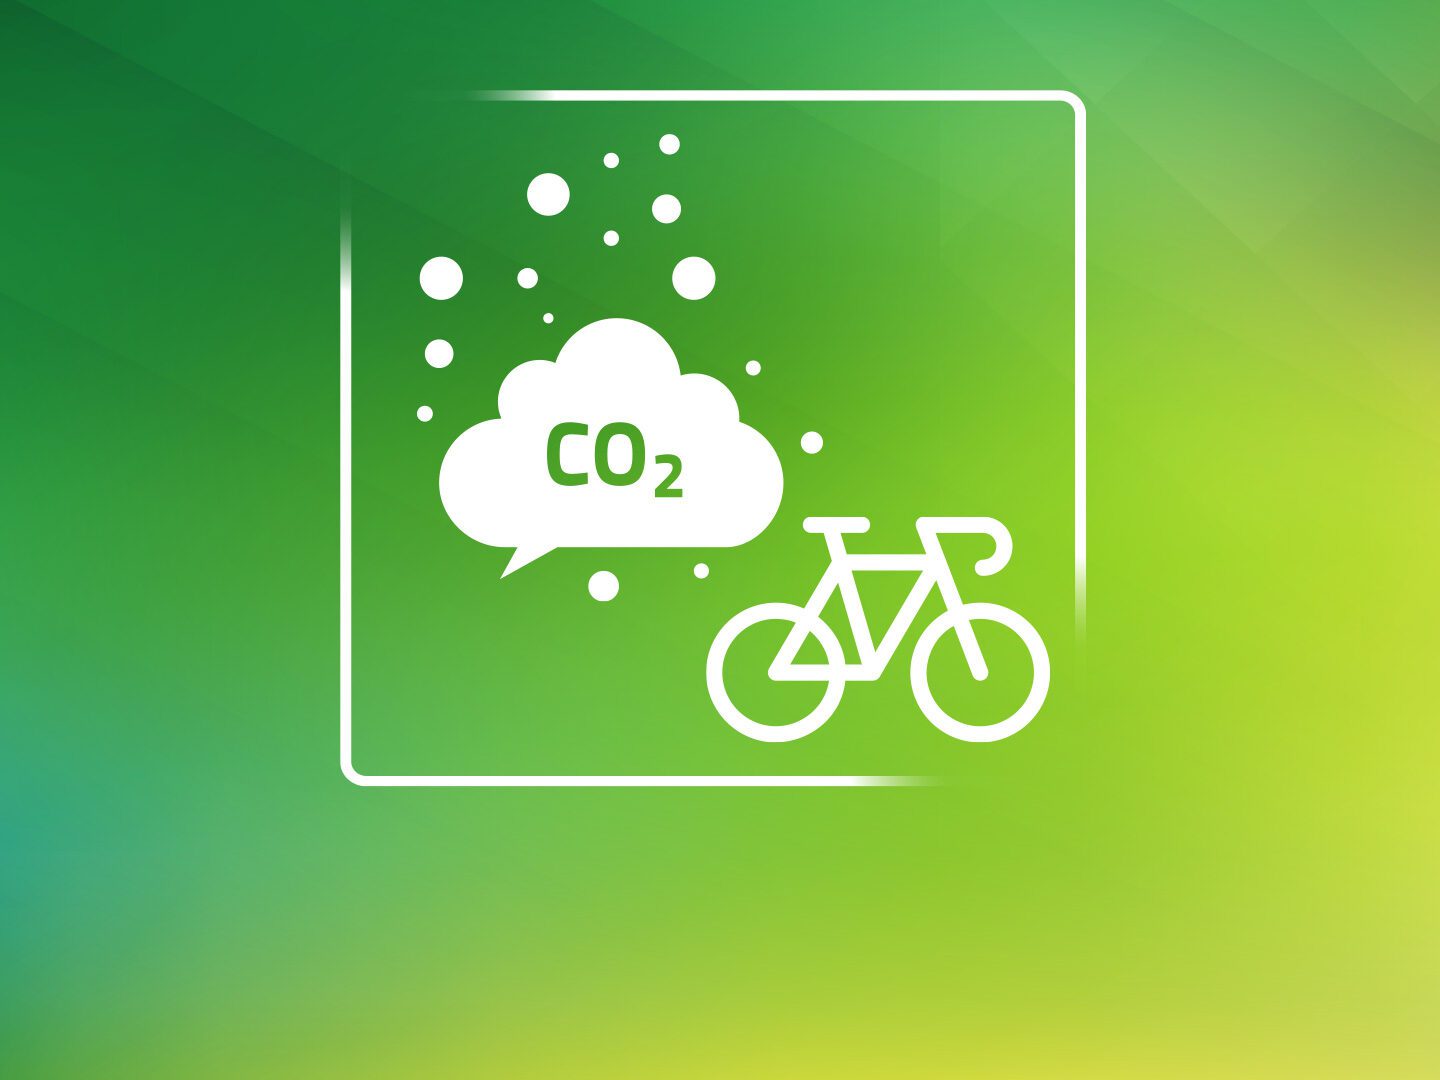 Eine CO2 Wolle und ein Fahrrad auf grünem Hintergrud